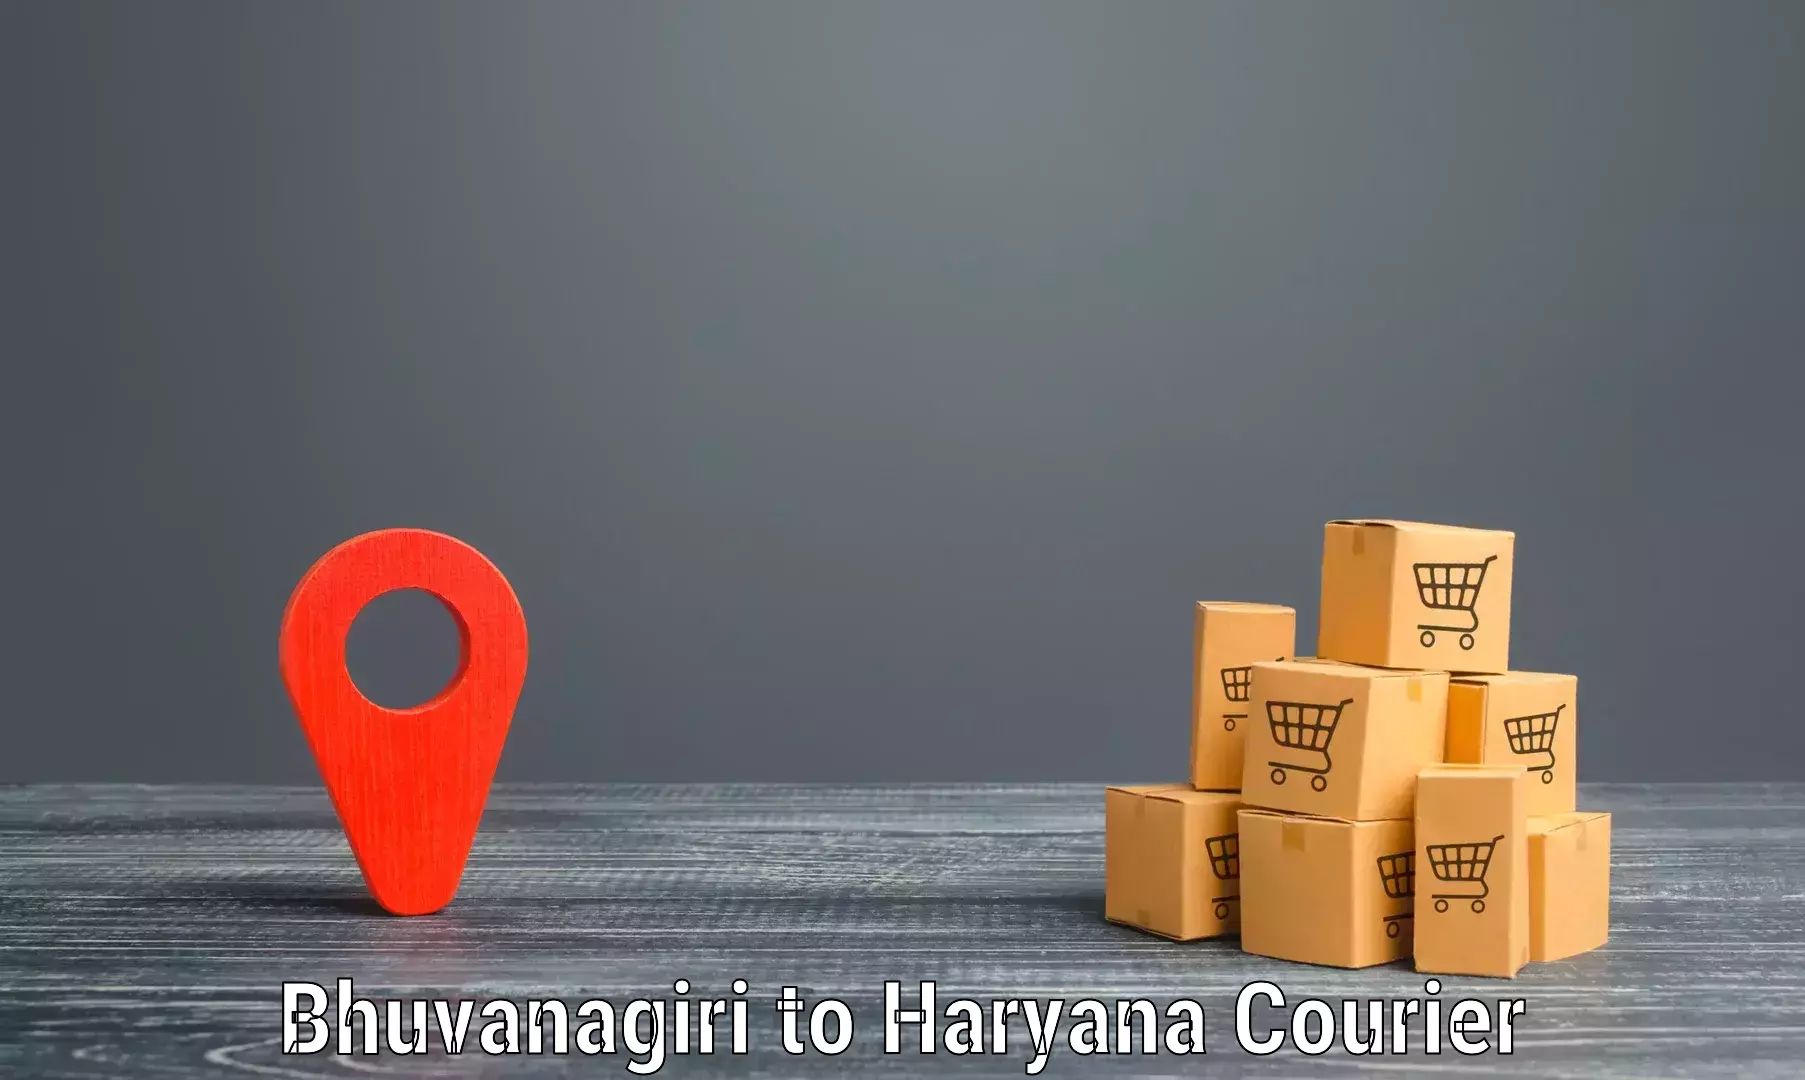 Global delivery options Bhuvanagiri to Chirya